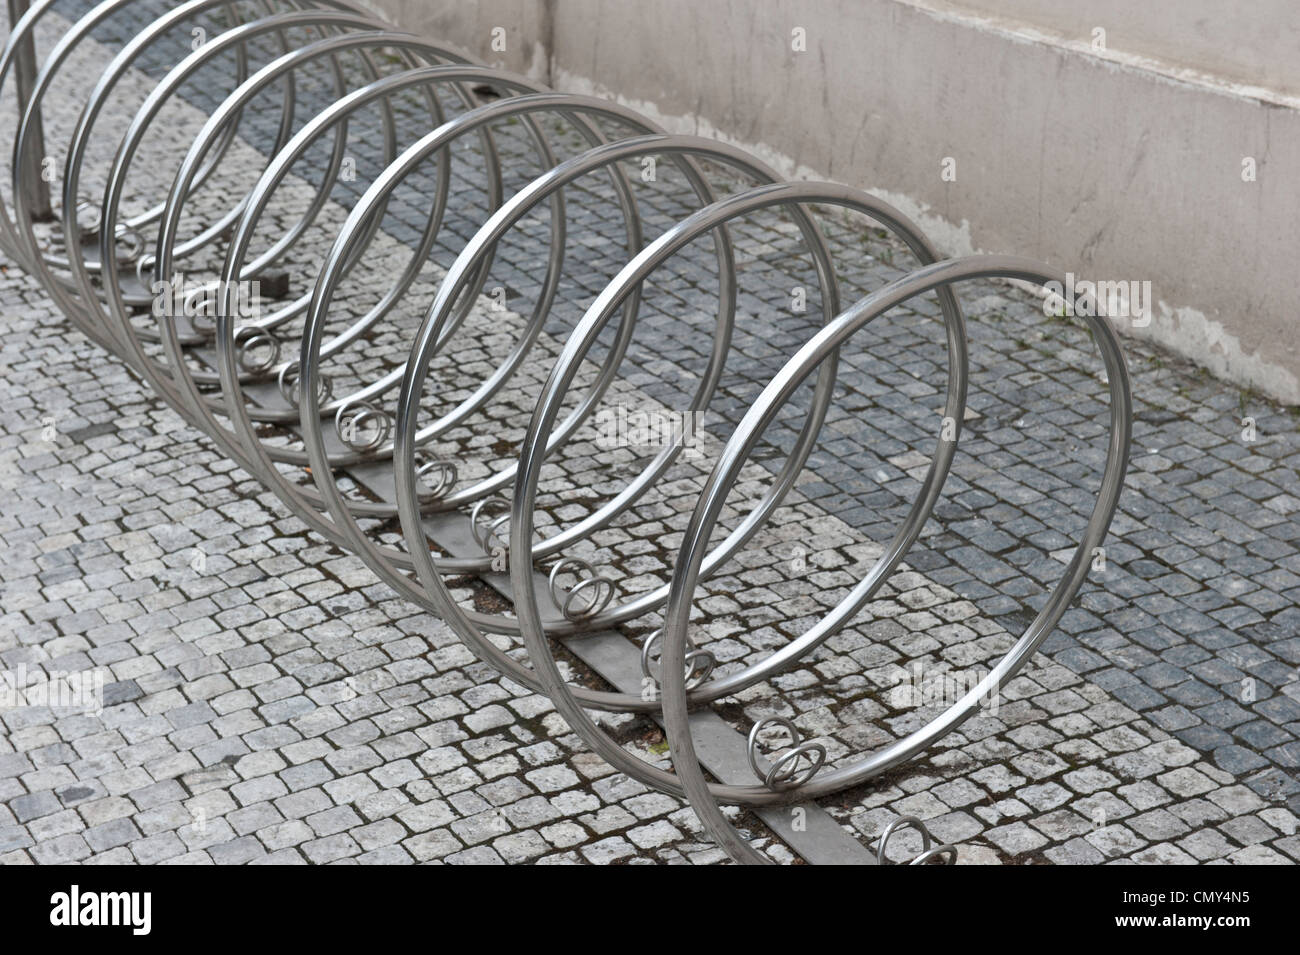 Un angle shot d'une spirale de forme circulaire, porte vélo vide. Banque D'Images